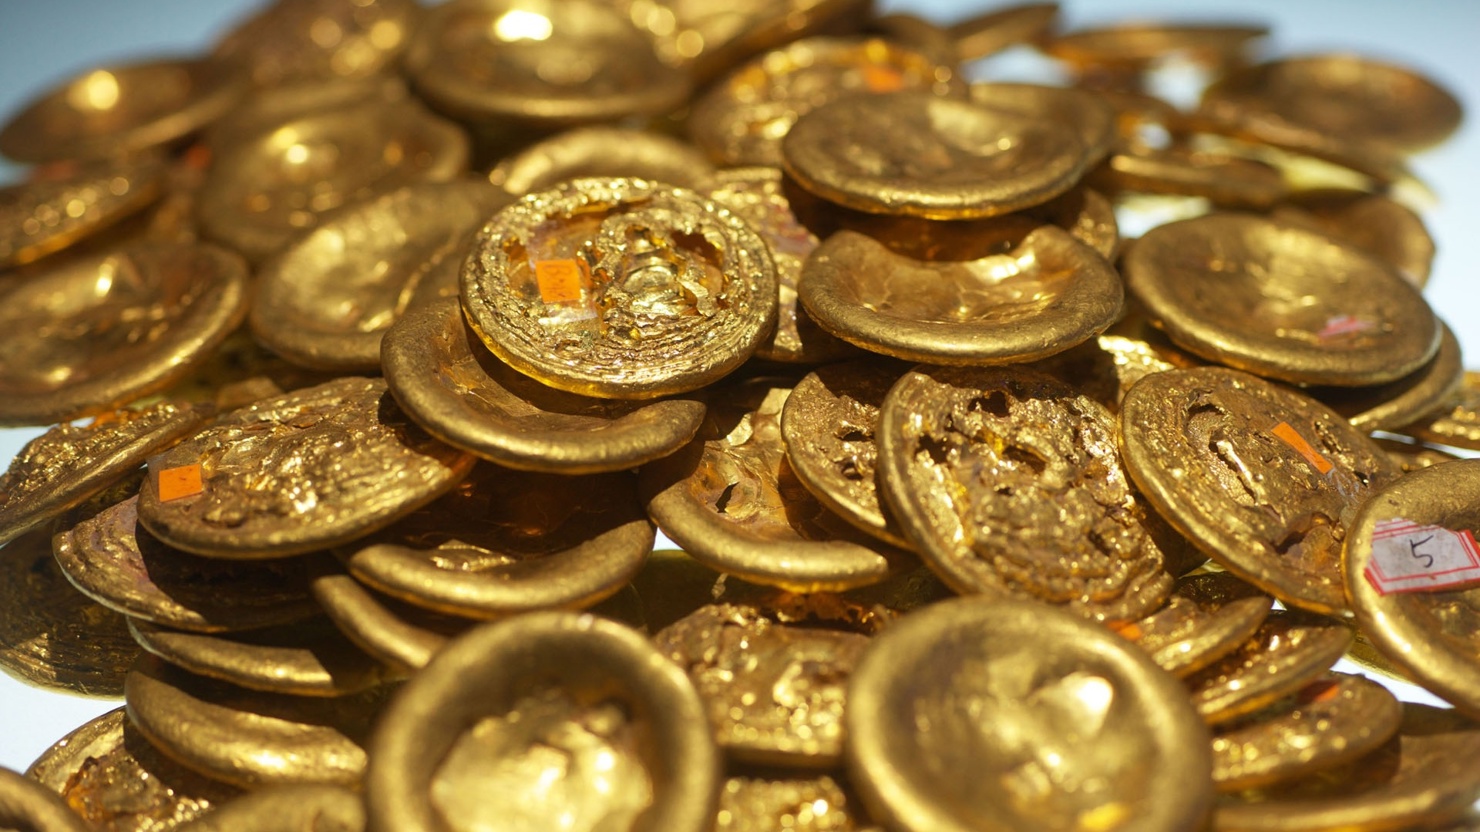 Trung Quốc được dự báo vẫn sẽ giữ mức tiêu thụ vàng vào khoảng 900-1.000 tấn vào năm 2017.